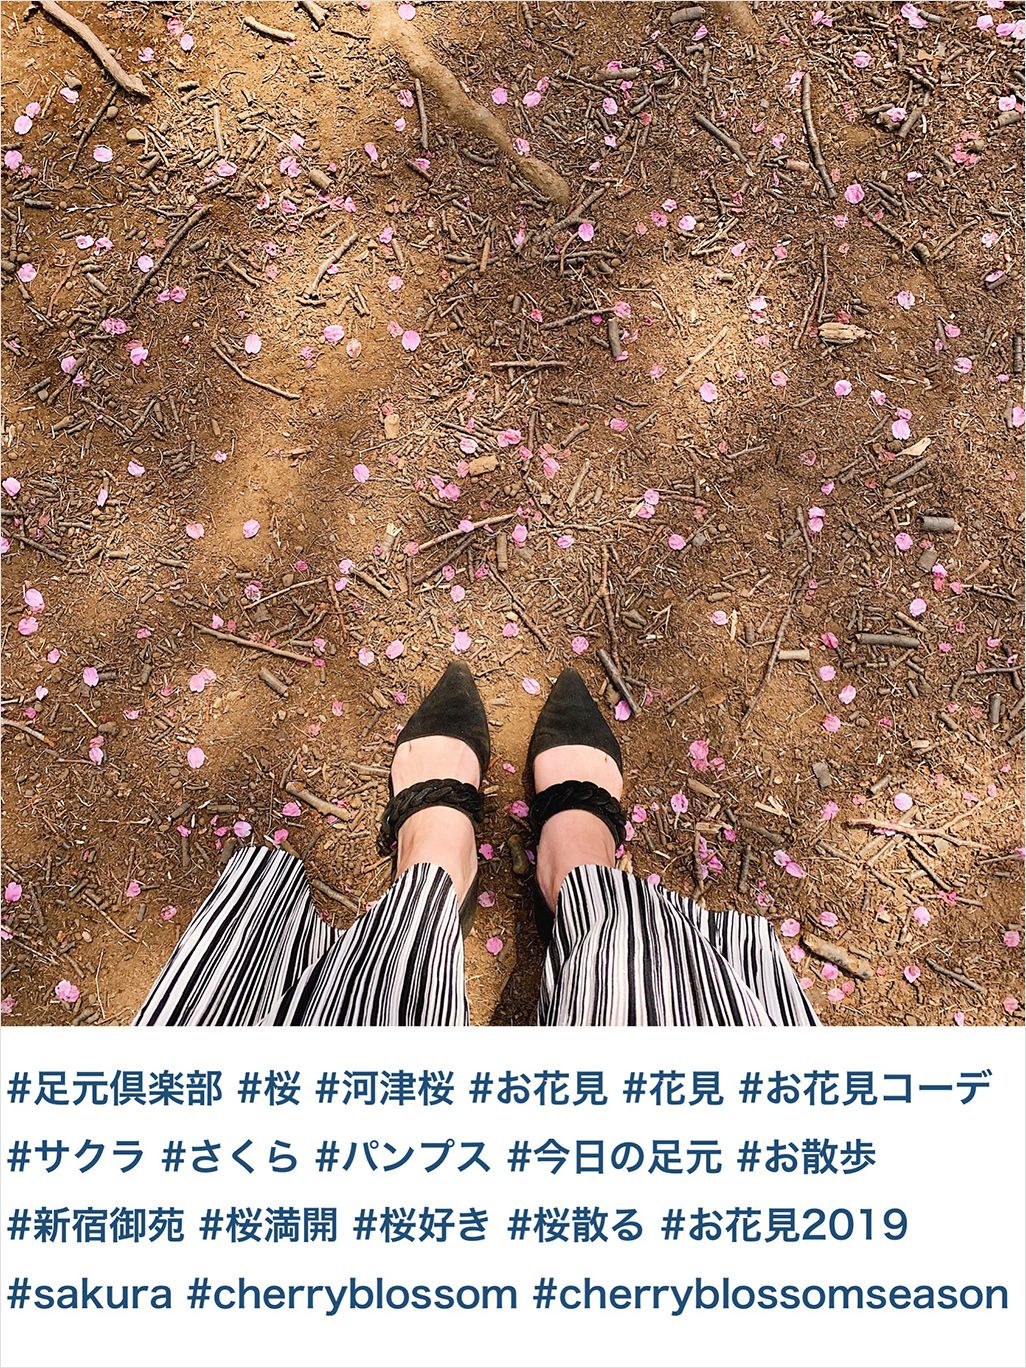 桜写真のハッシュタグ例